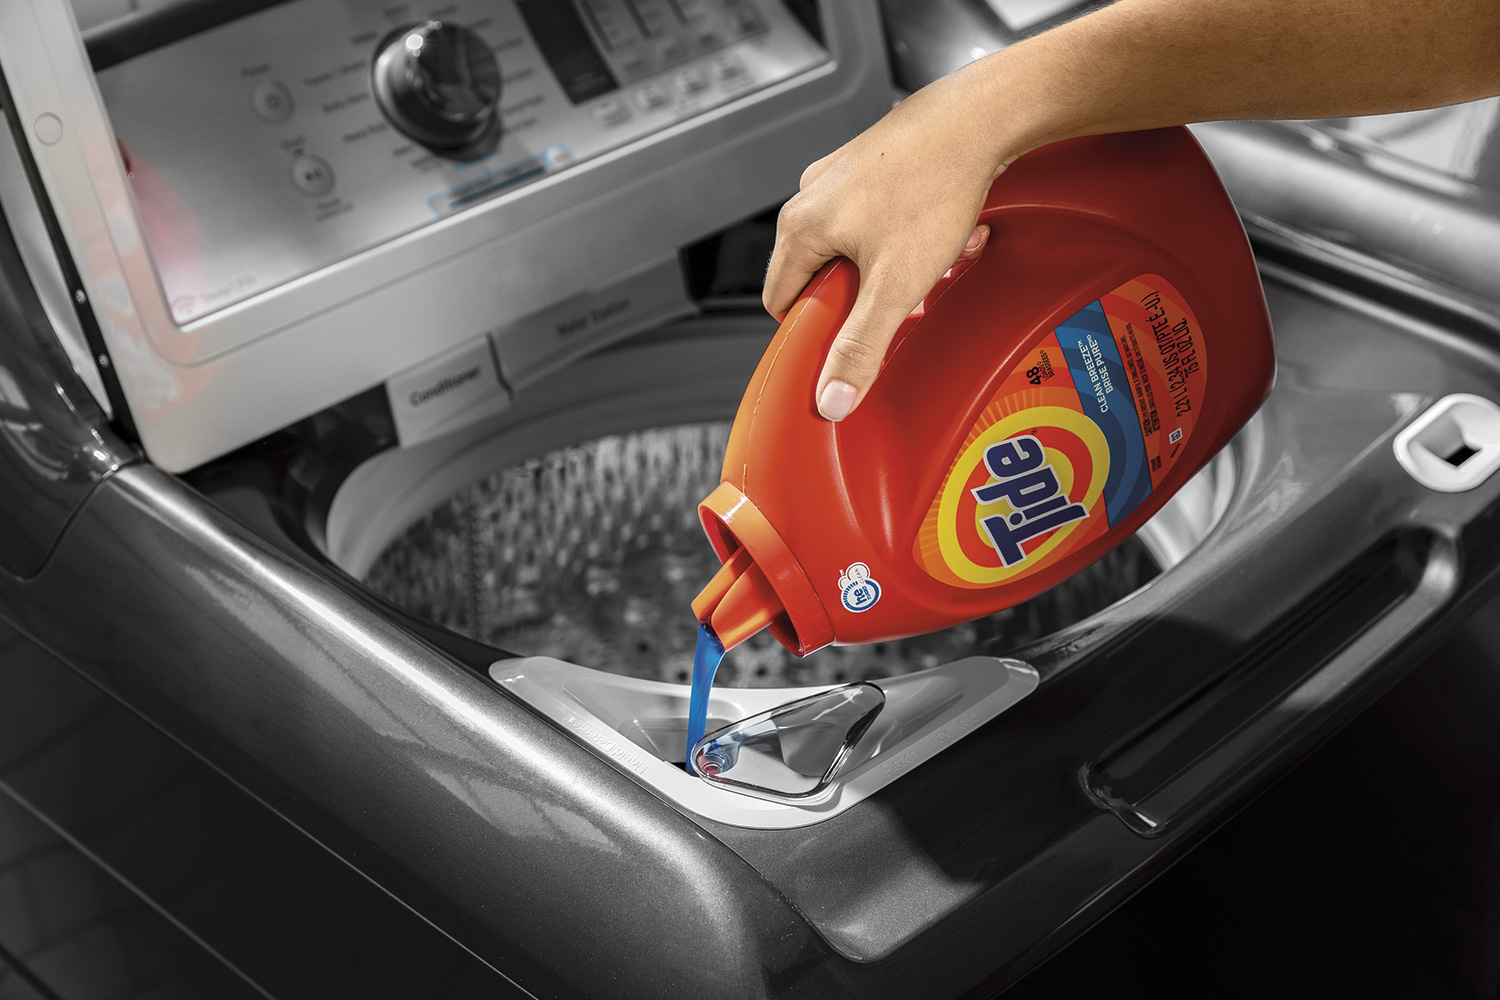 GE appliances tide detergent